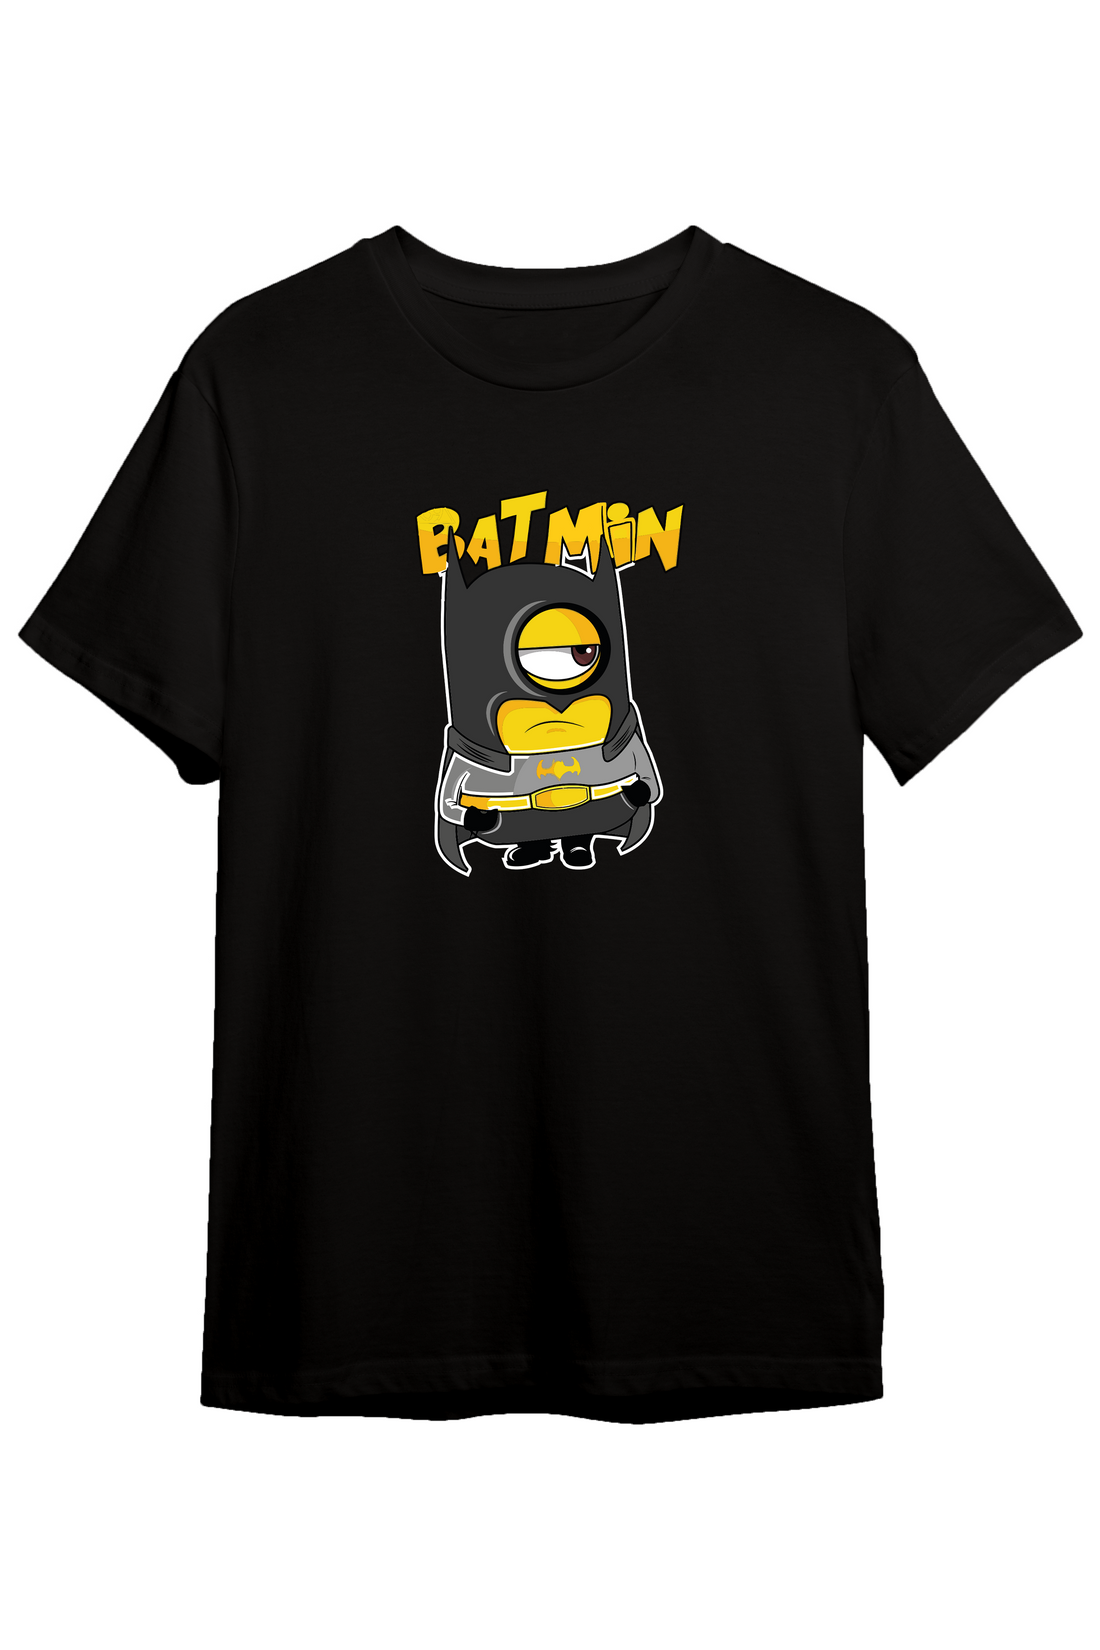 Batmin - Regular Tshirt